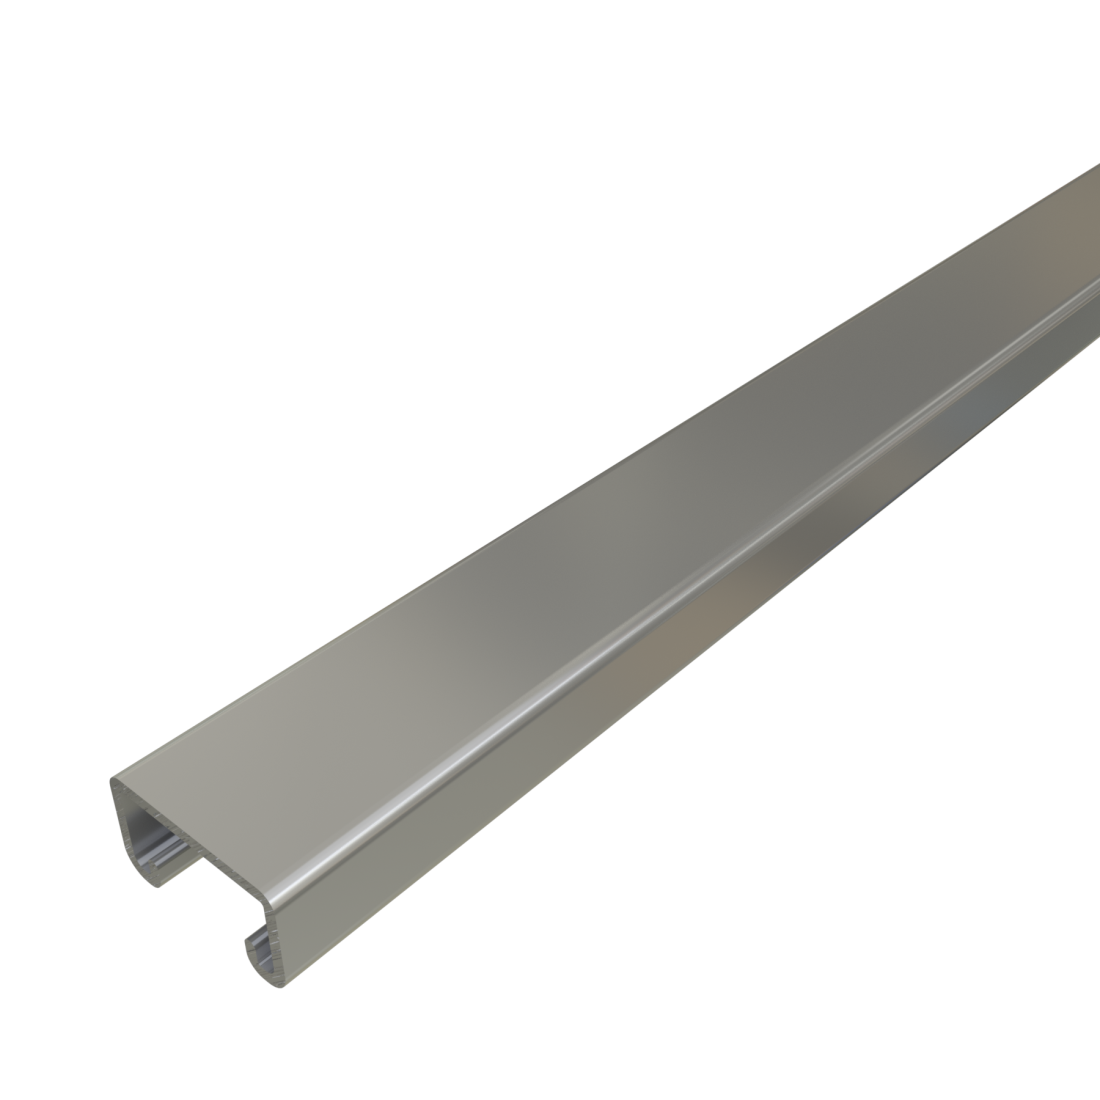 Unistrut P3300 - 1-5/8" x 7/8" 12 Gauge Metal Framing Strut, Solid